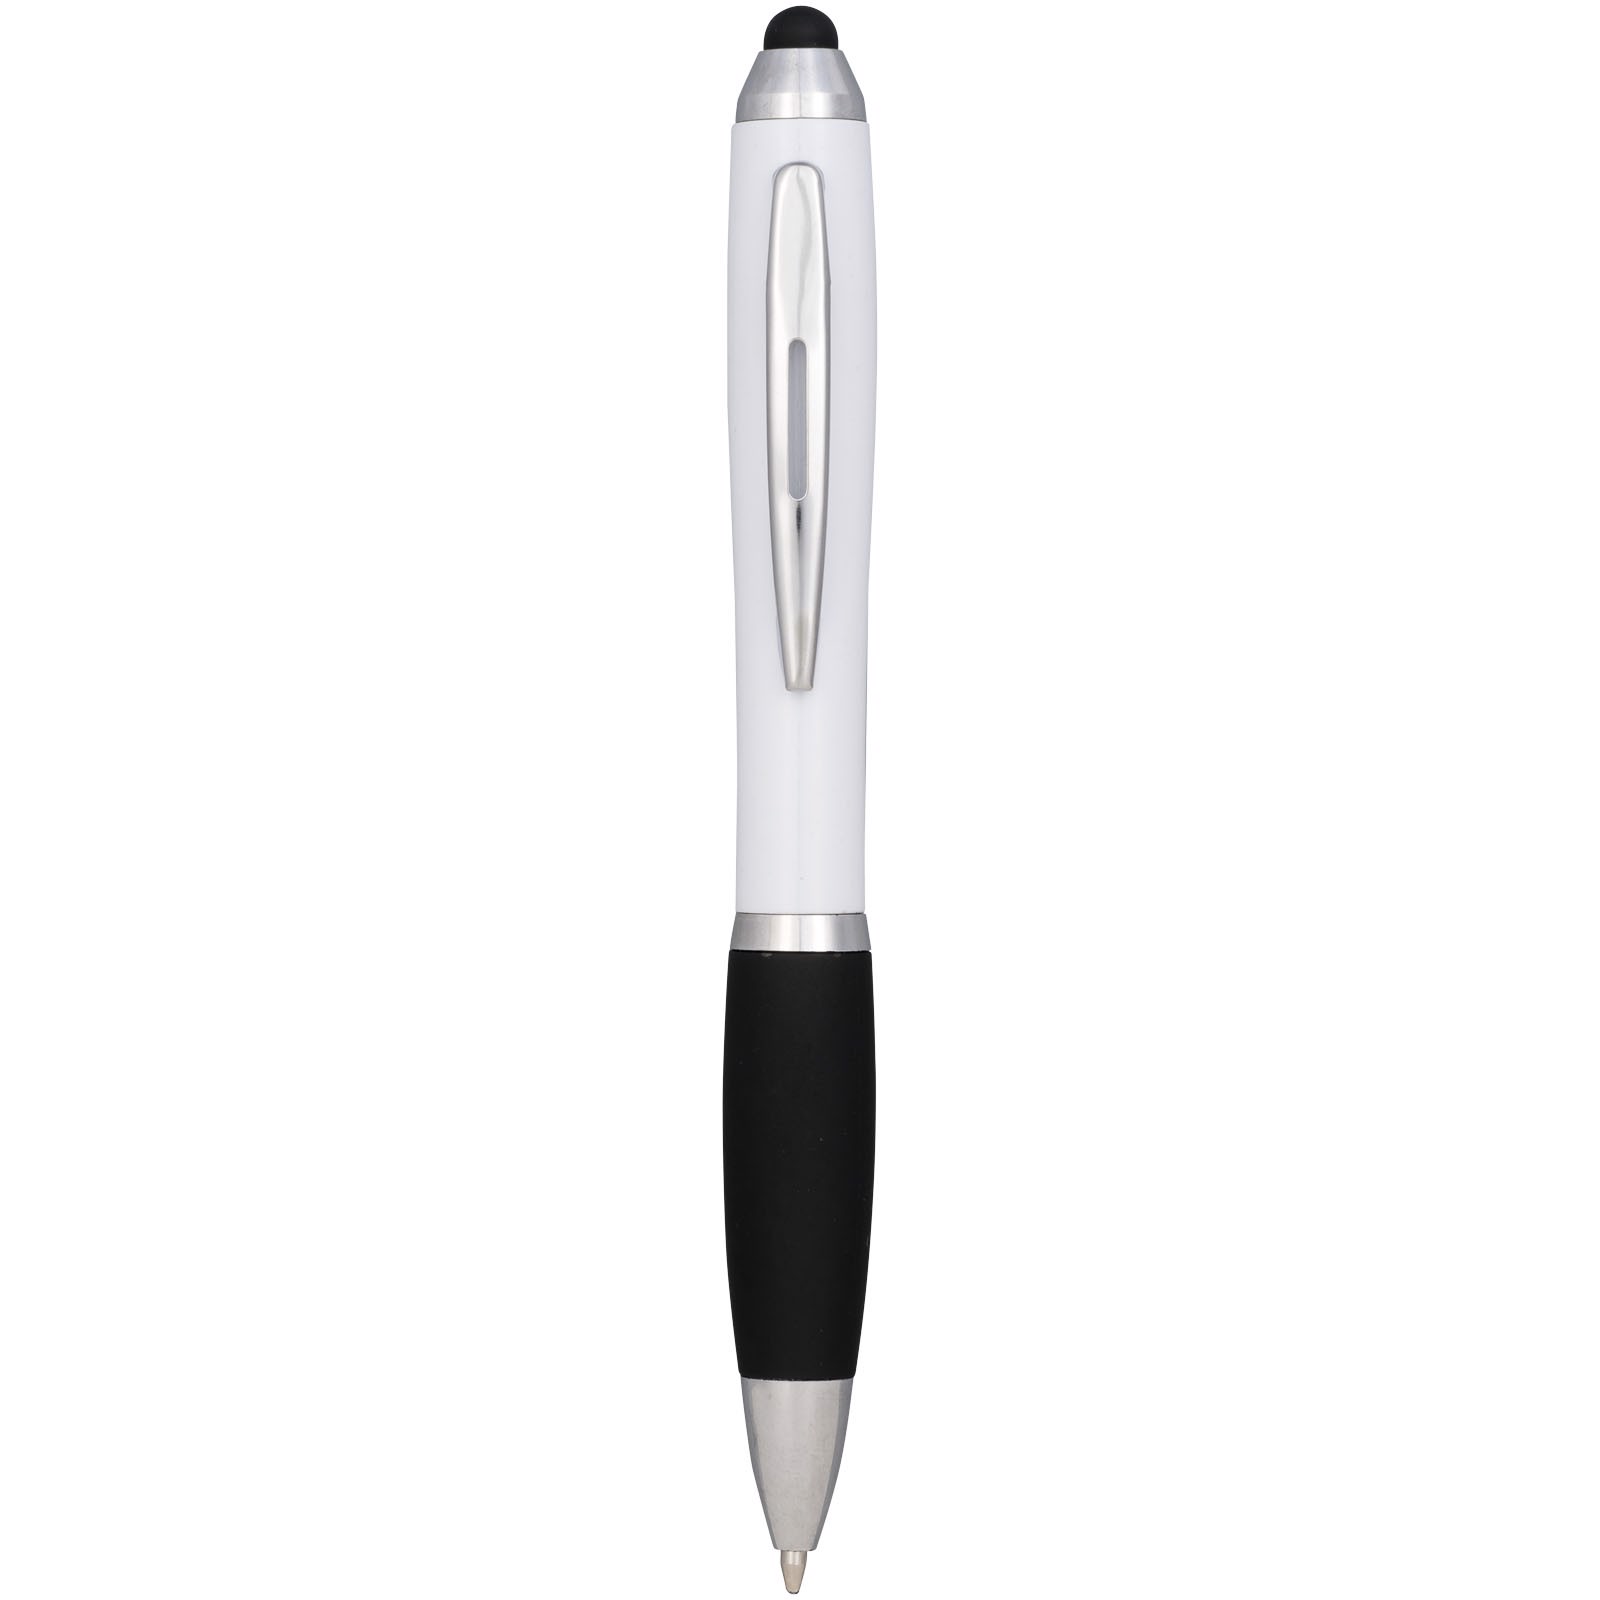 Kuličkové pero a stylus Nash s černým úchopem - Bílá / Černá